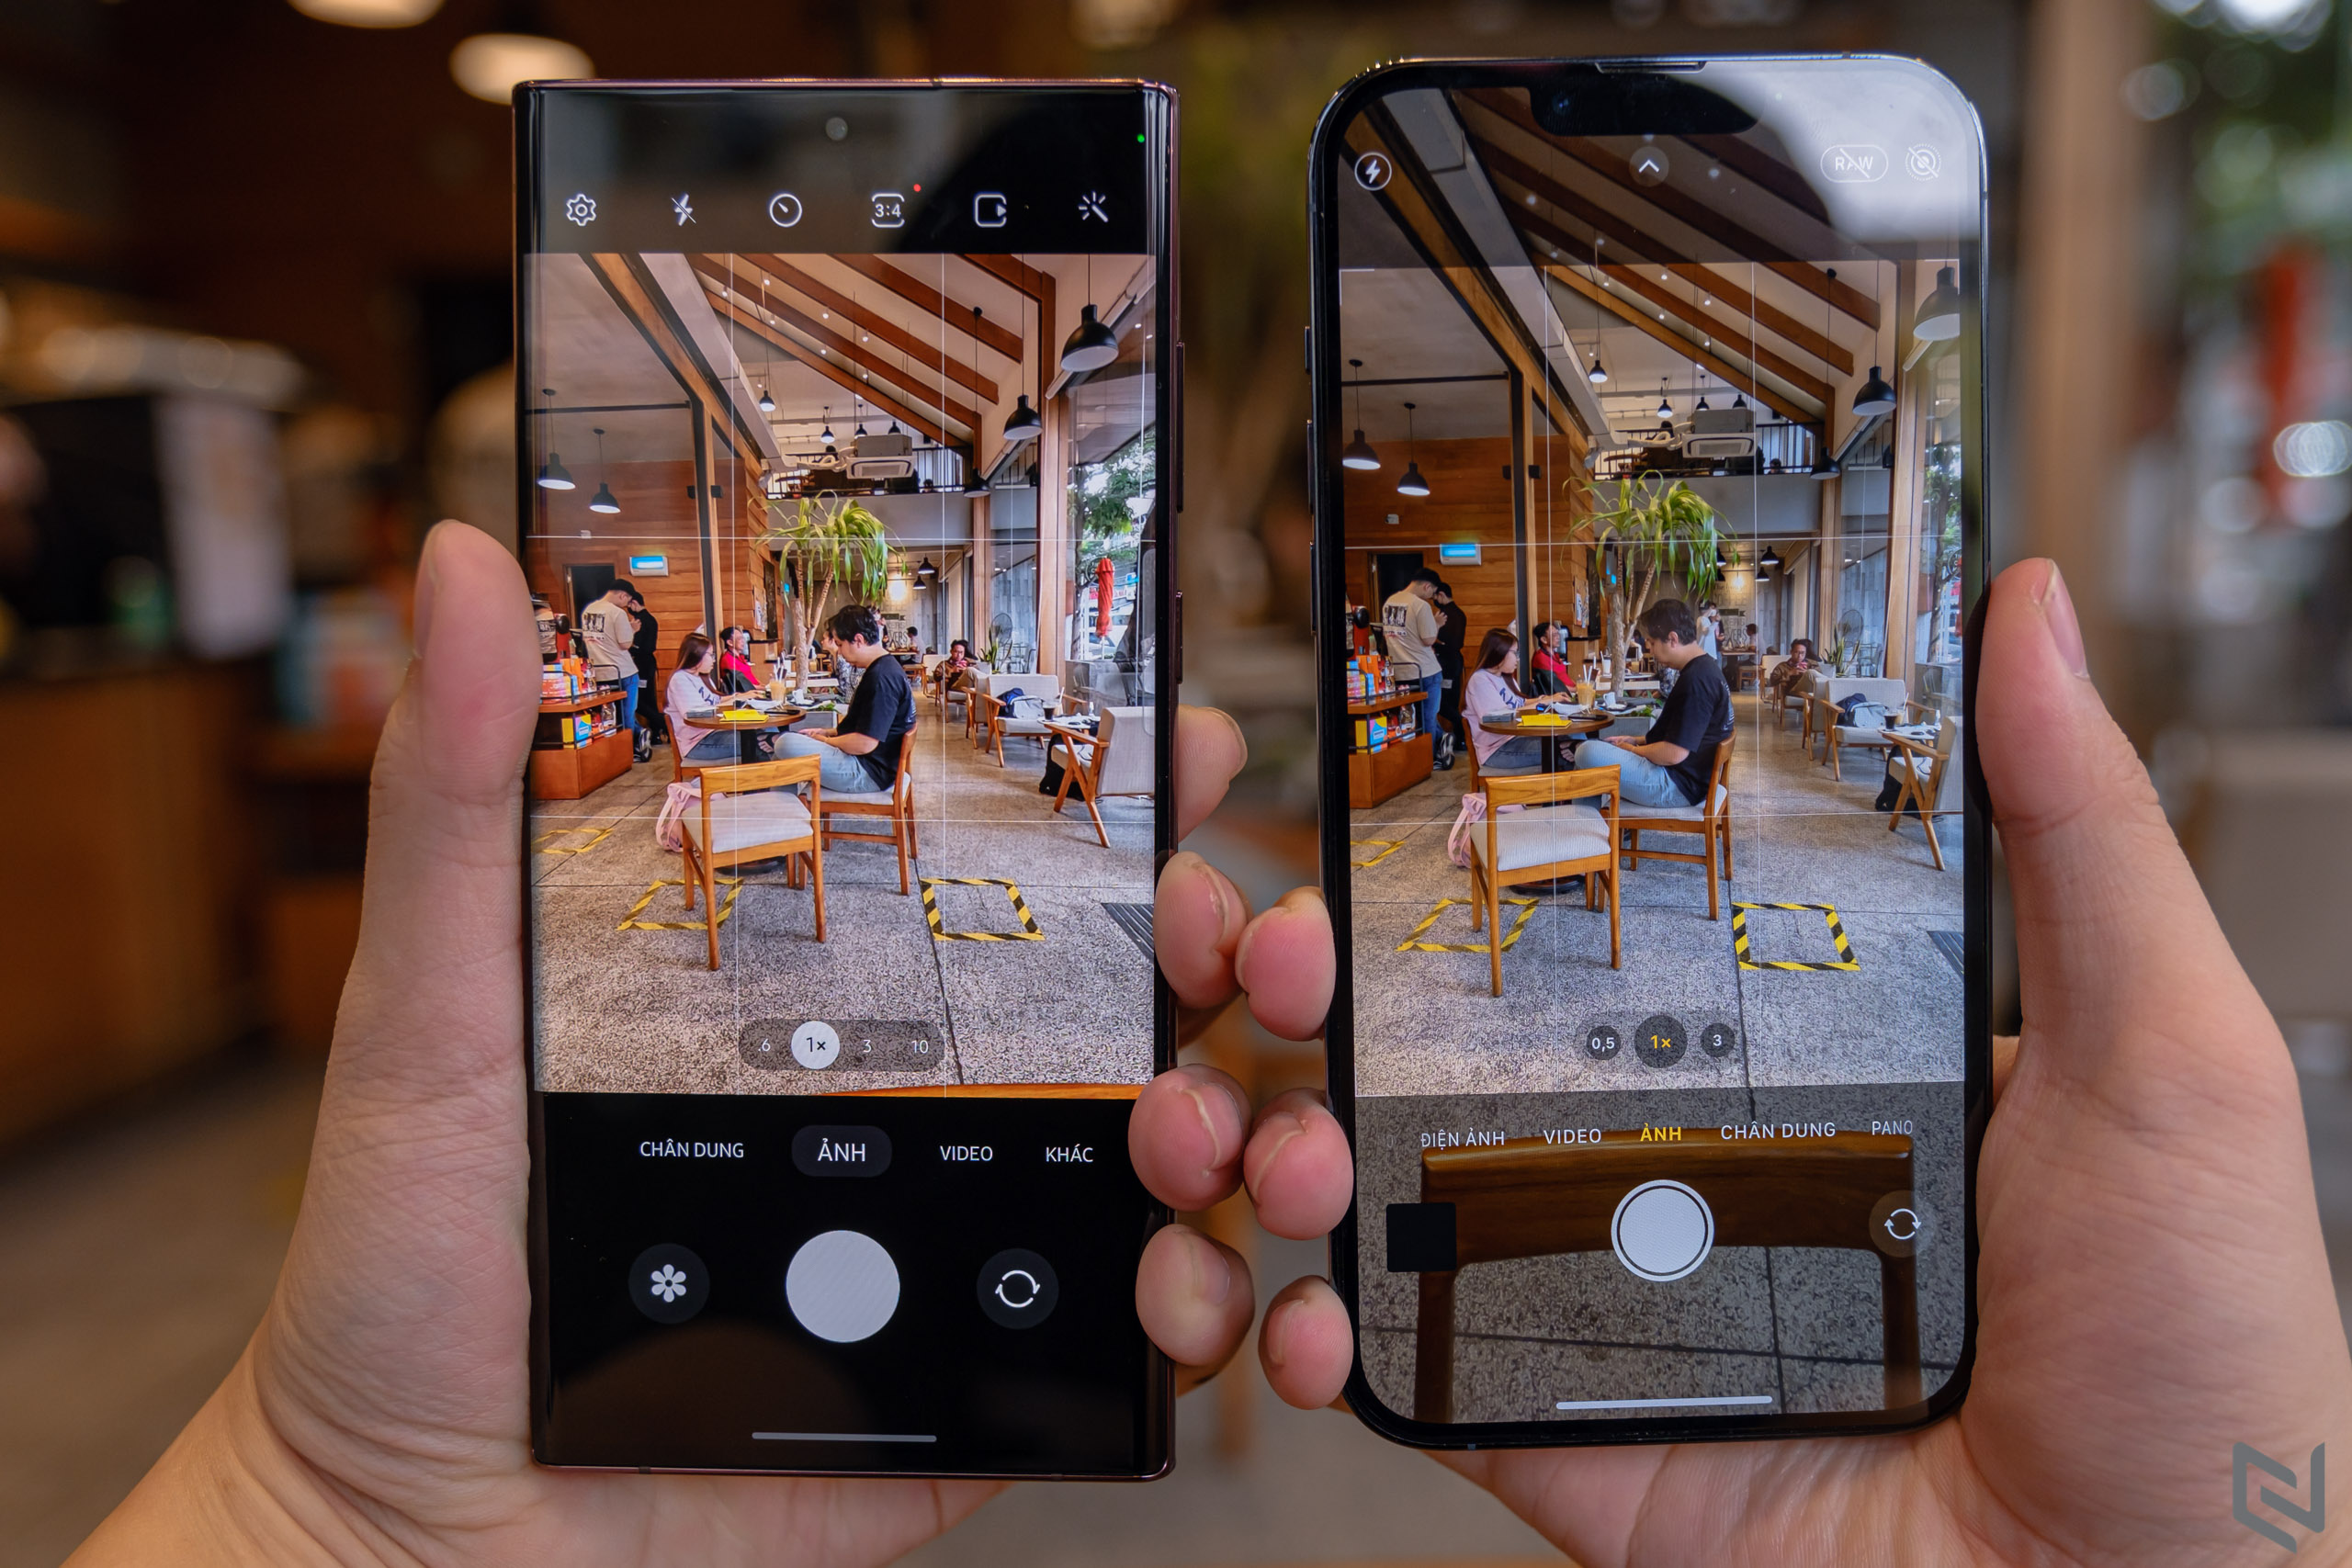 Với Samsung Galaxy S22 Ultra và Apple iPhone 13 Pro Max, bạn sẽ không phải lo lắng về việc chụp ảnh không đẹp nữa. Hai chiếc điện thoại này sở hữu camera hiện đại nhất với nhiều tính năng thông minh hỗ trợ người dùng chụp ảnh đẹp nhất có thể. Hãy xem hình ảnh liên quan để cảm nhận sự khác biệt vượt trội của chúng.